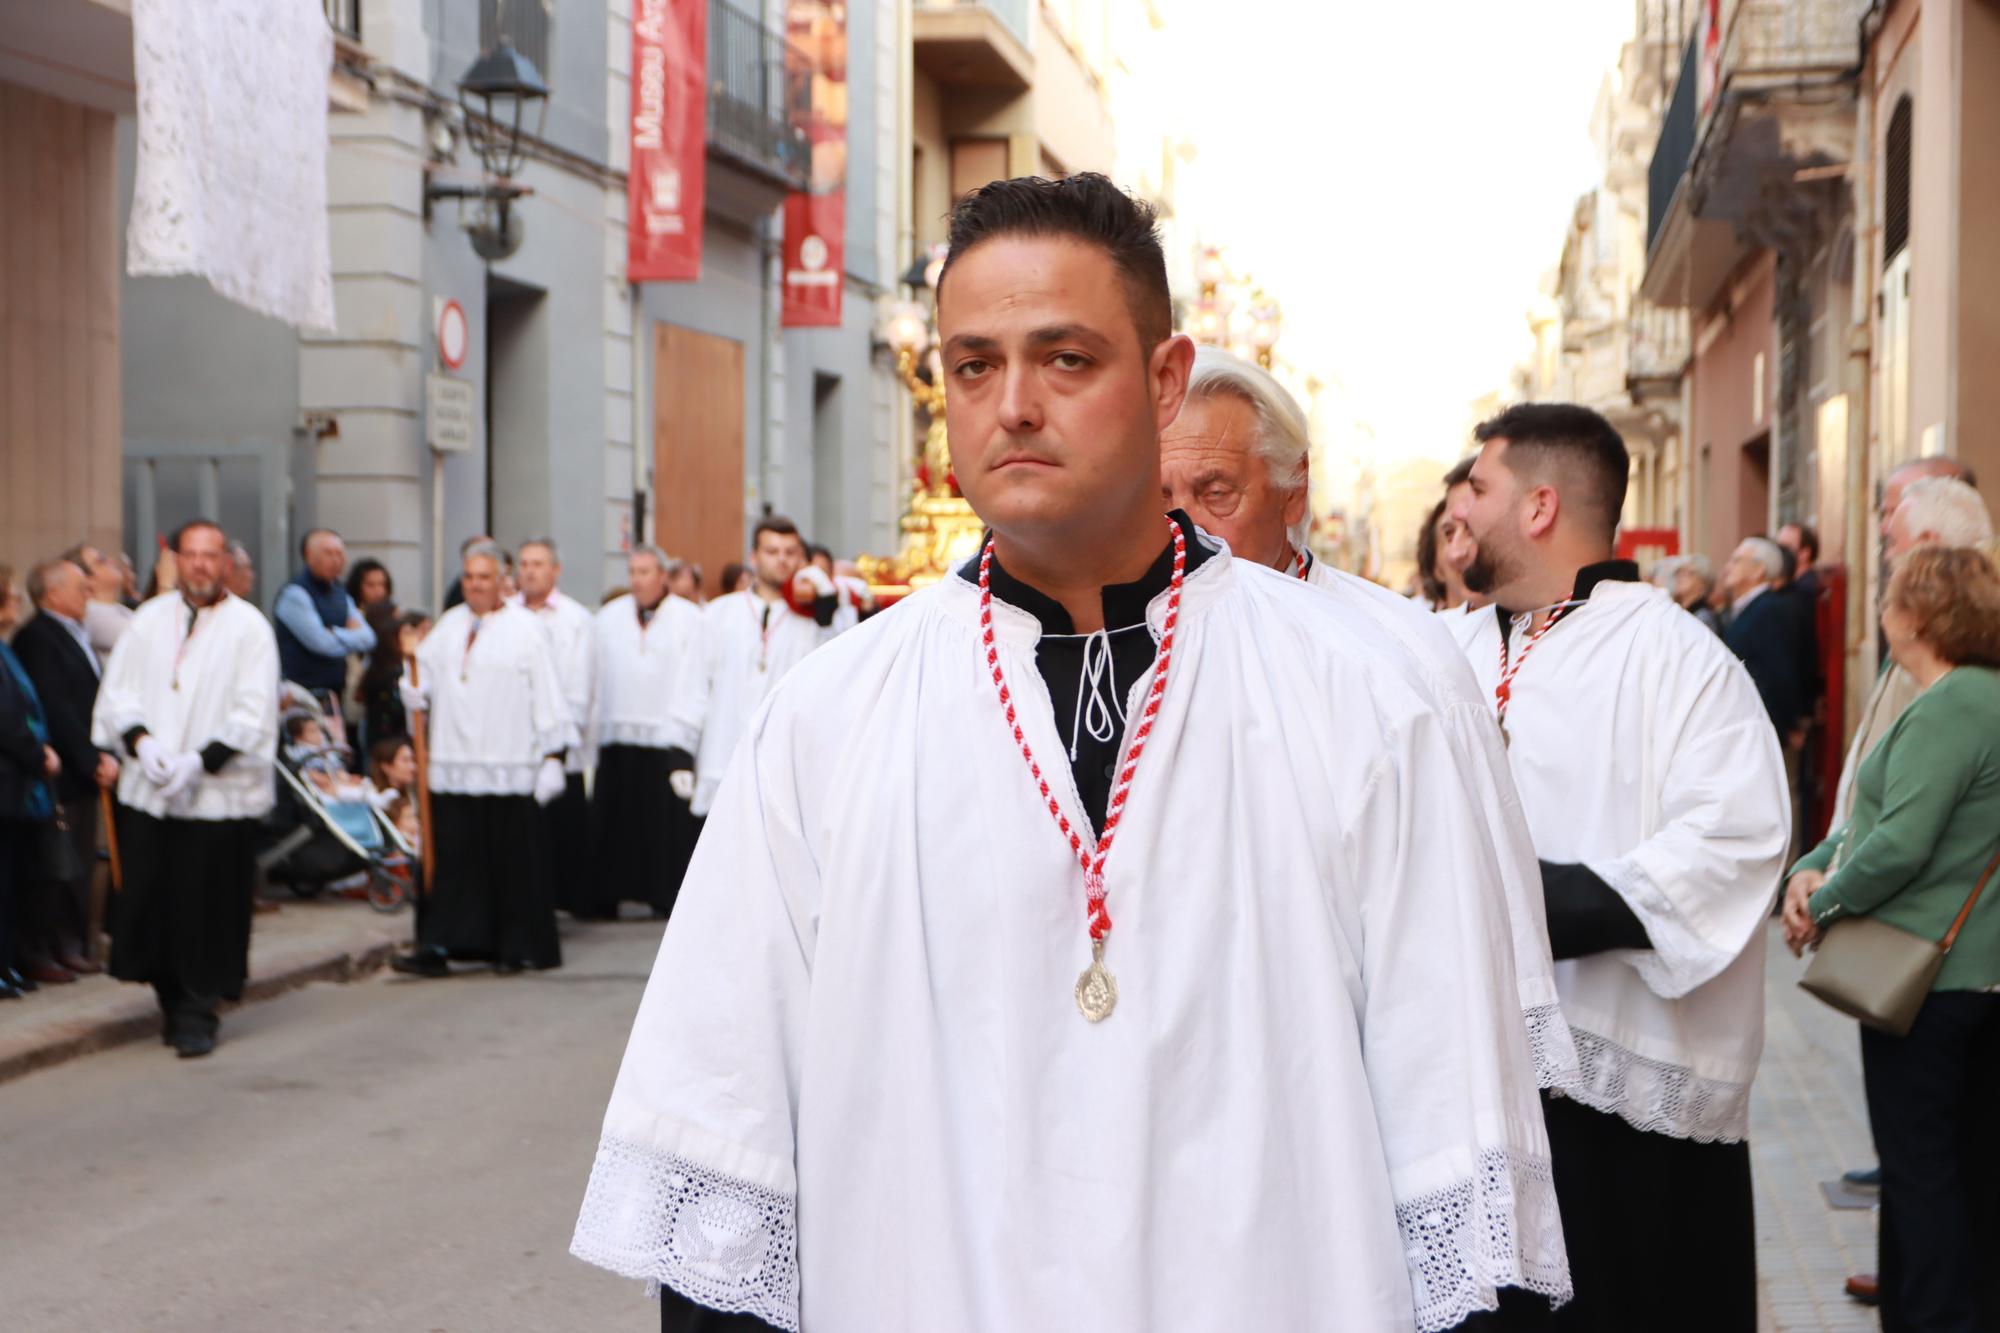 Fotos de la procesión de Santa Quitèria en las fiestas de Almassora